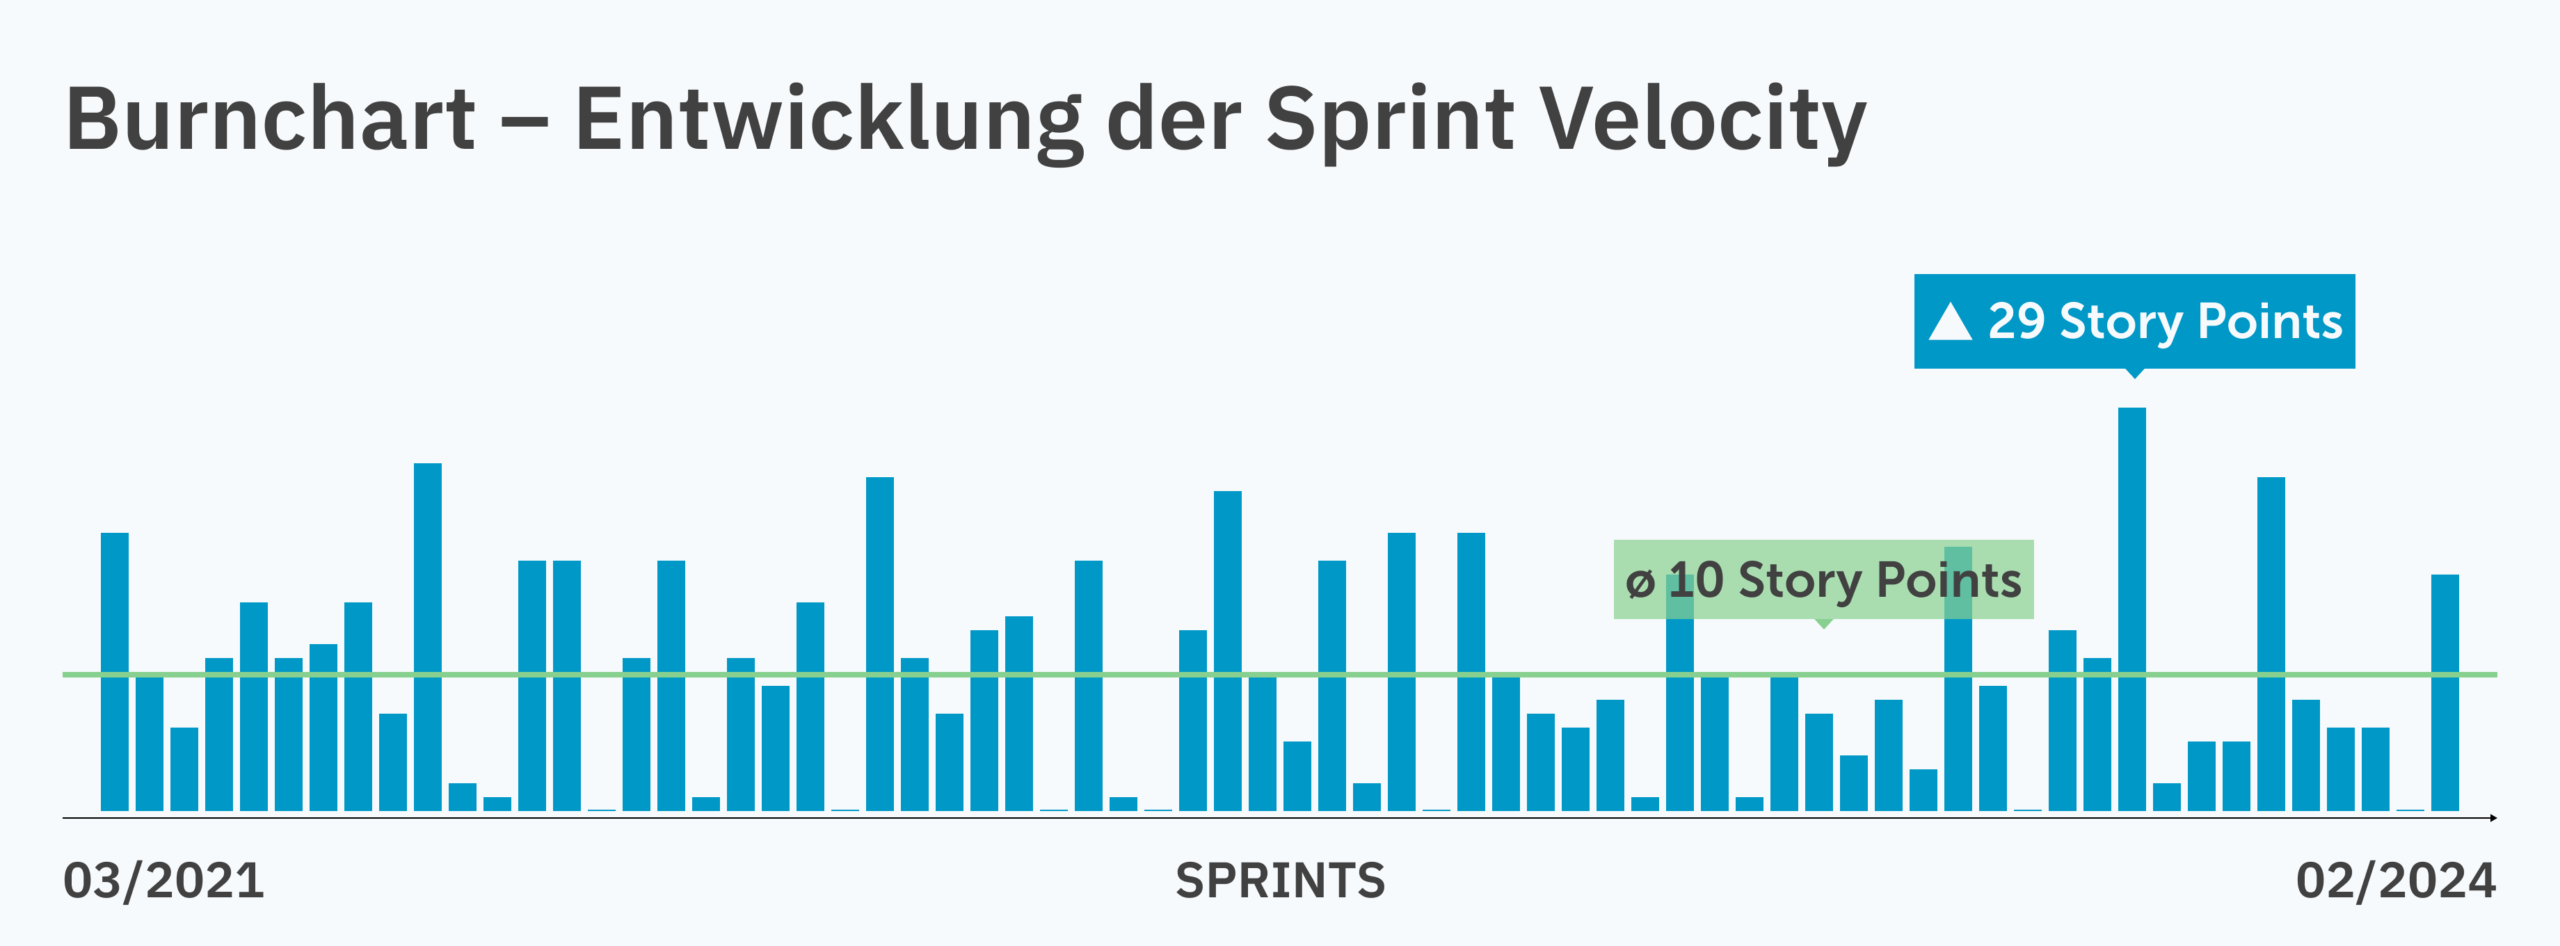 Burnchart, der die Entwicklung der Sprint Velocity im Projekt über einen Zeitraum von 3 Jahren zeigt - Spitzenwert lag bei 29 Story Points in einem Sprint, der langjährige Durchschnitt bei 10 Story Points.